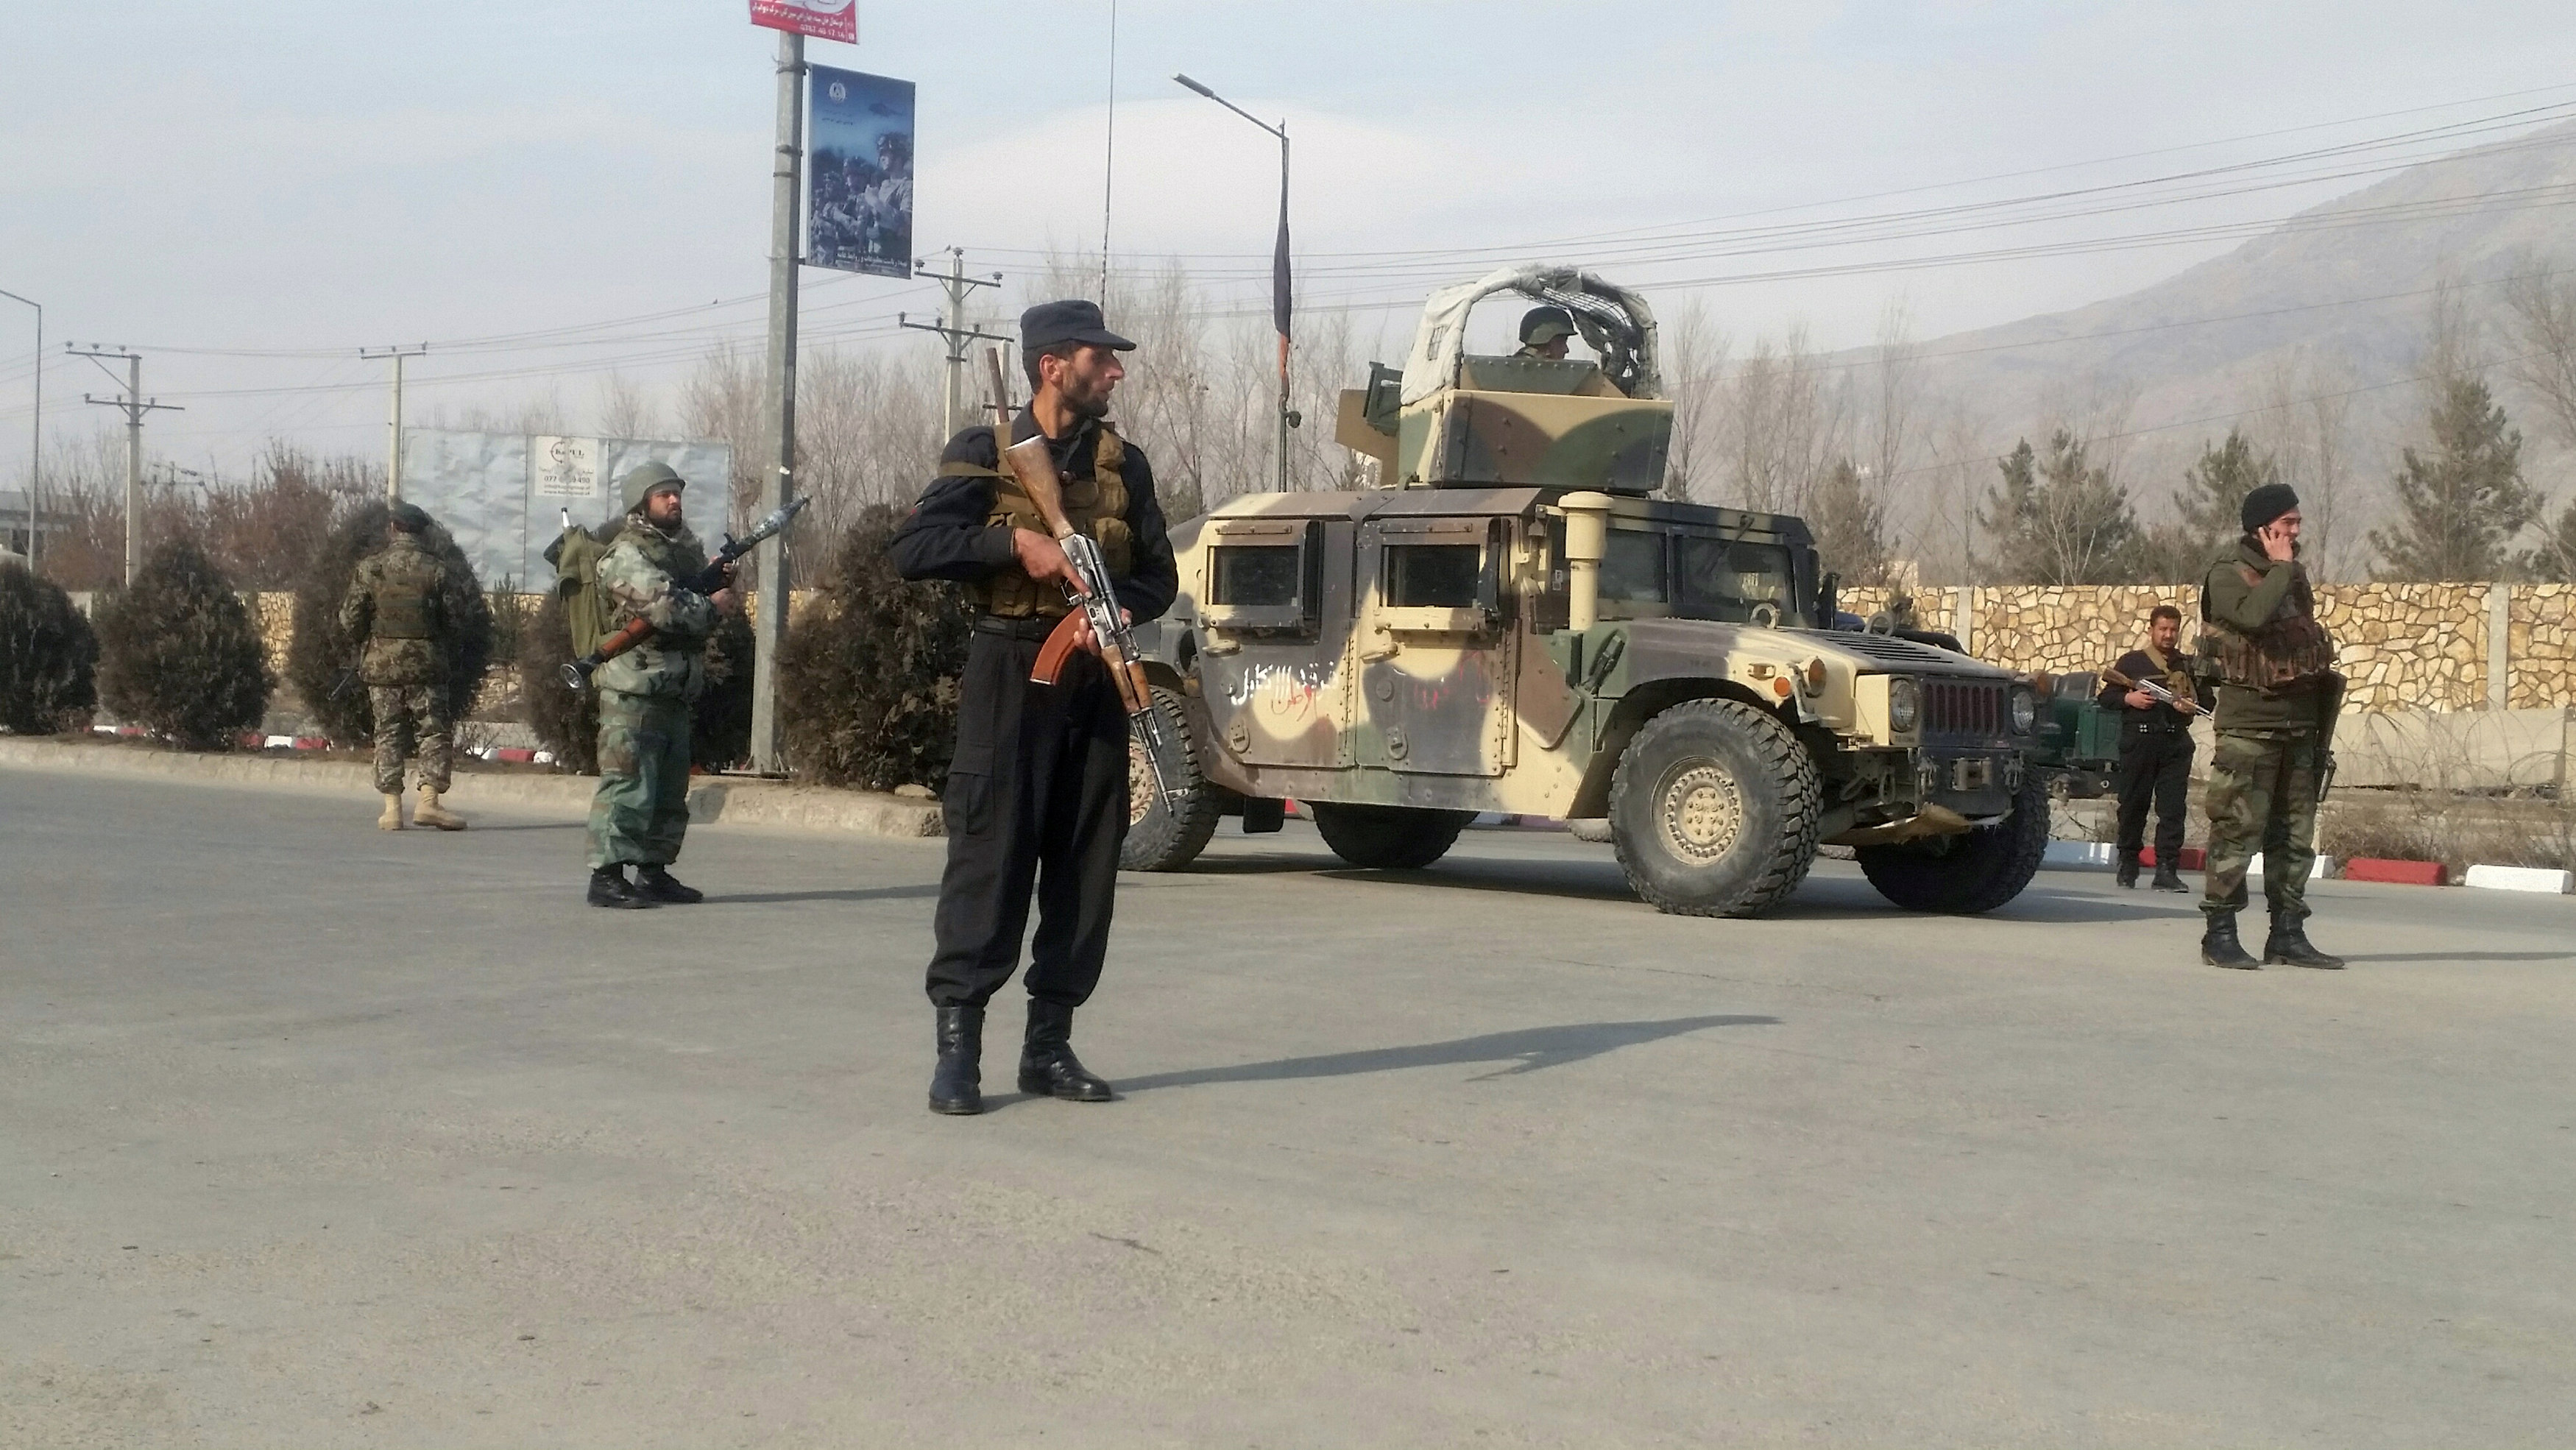 El Estado Islámico reivindica ataque contra servicios secretos afganos en Kabul